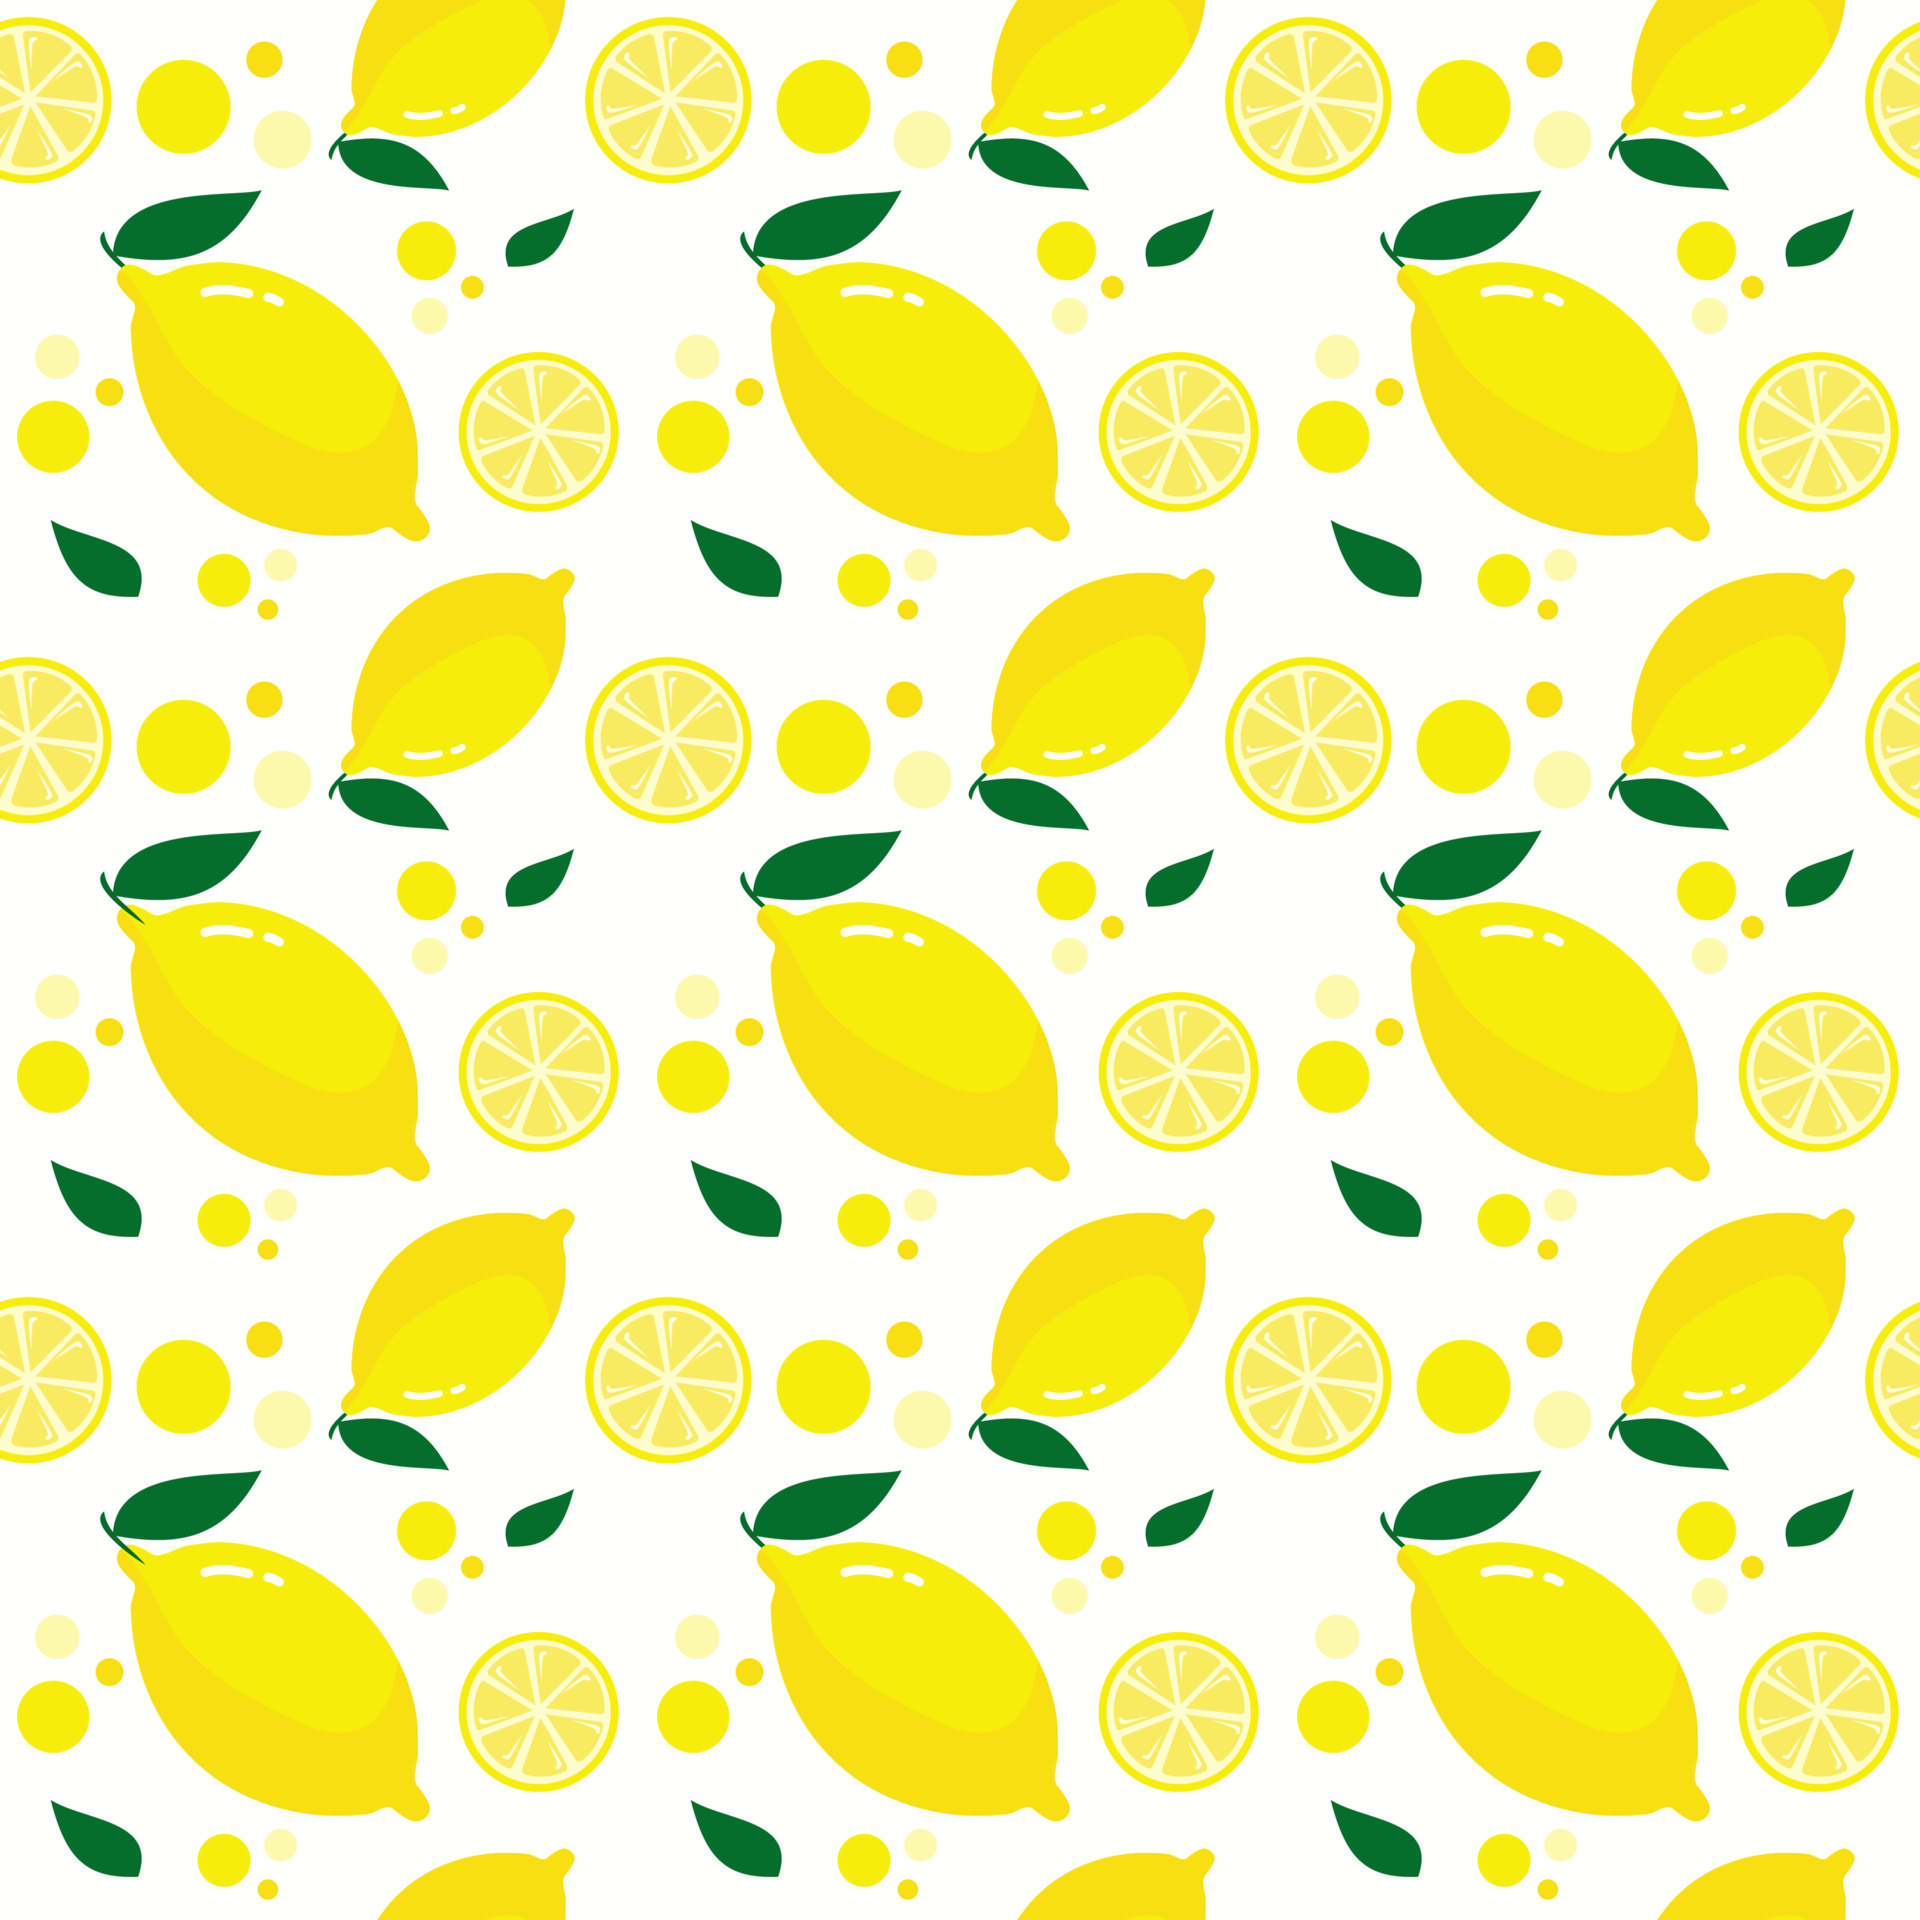 Nền cute lemon này sẽ đem lại cho bạn cảm giác tươi mát của mùa hè. Bức ảnh không chỉ đơn giản là hình ảnh trái chanh, mà còn là một tác phẩm nghệ thuật đầy sáng tạo, dành cho những ai yêu thích sự độc đáo và mới mẻ.